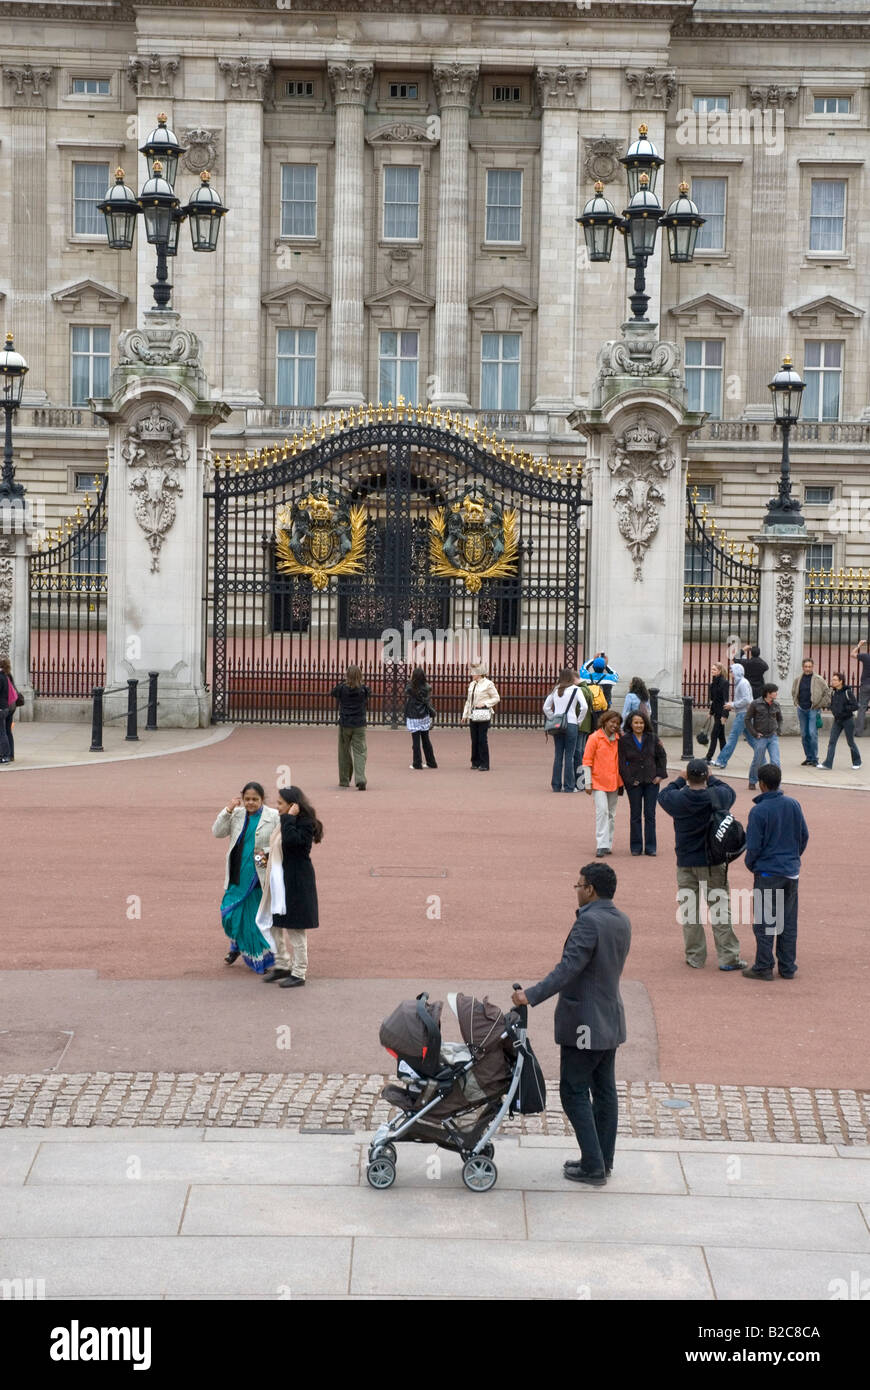 Buckingham Palace with tourists, London, England, UK Stock Photo